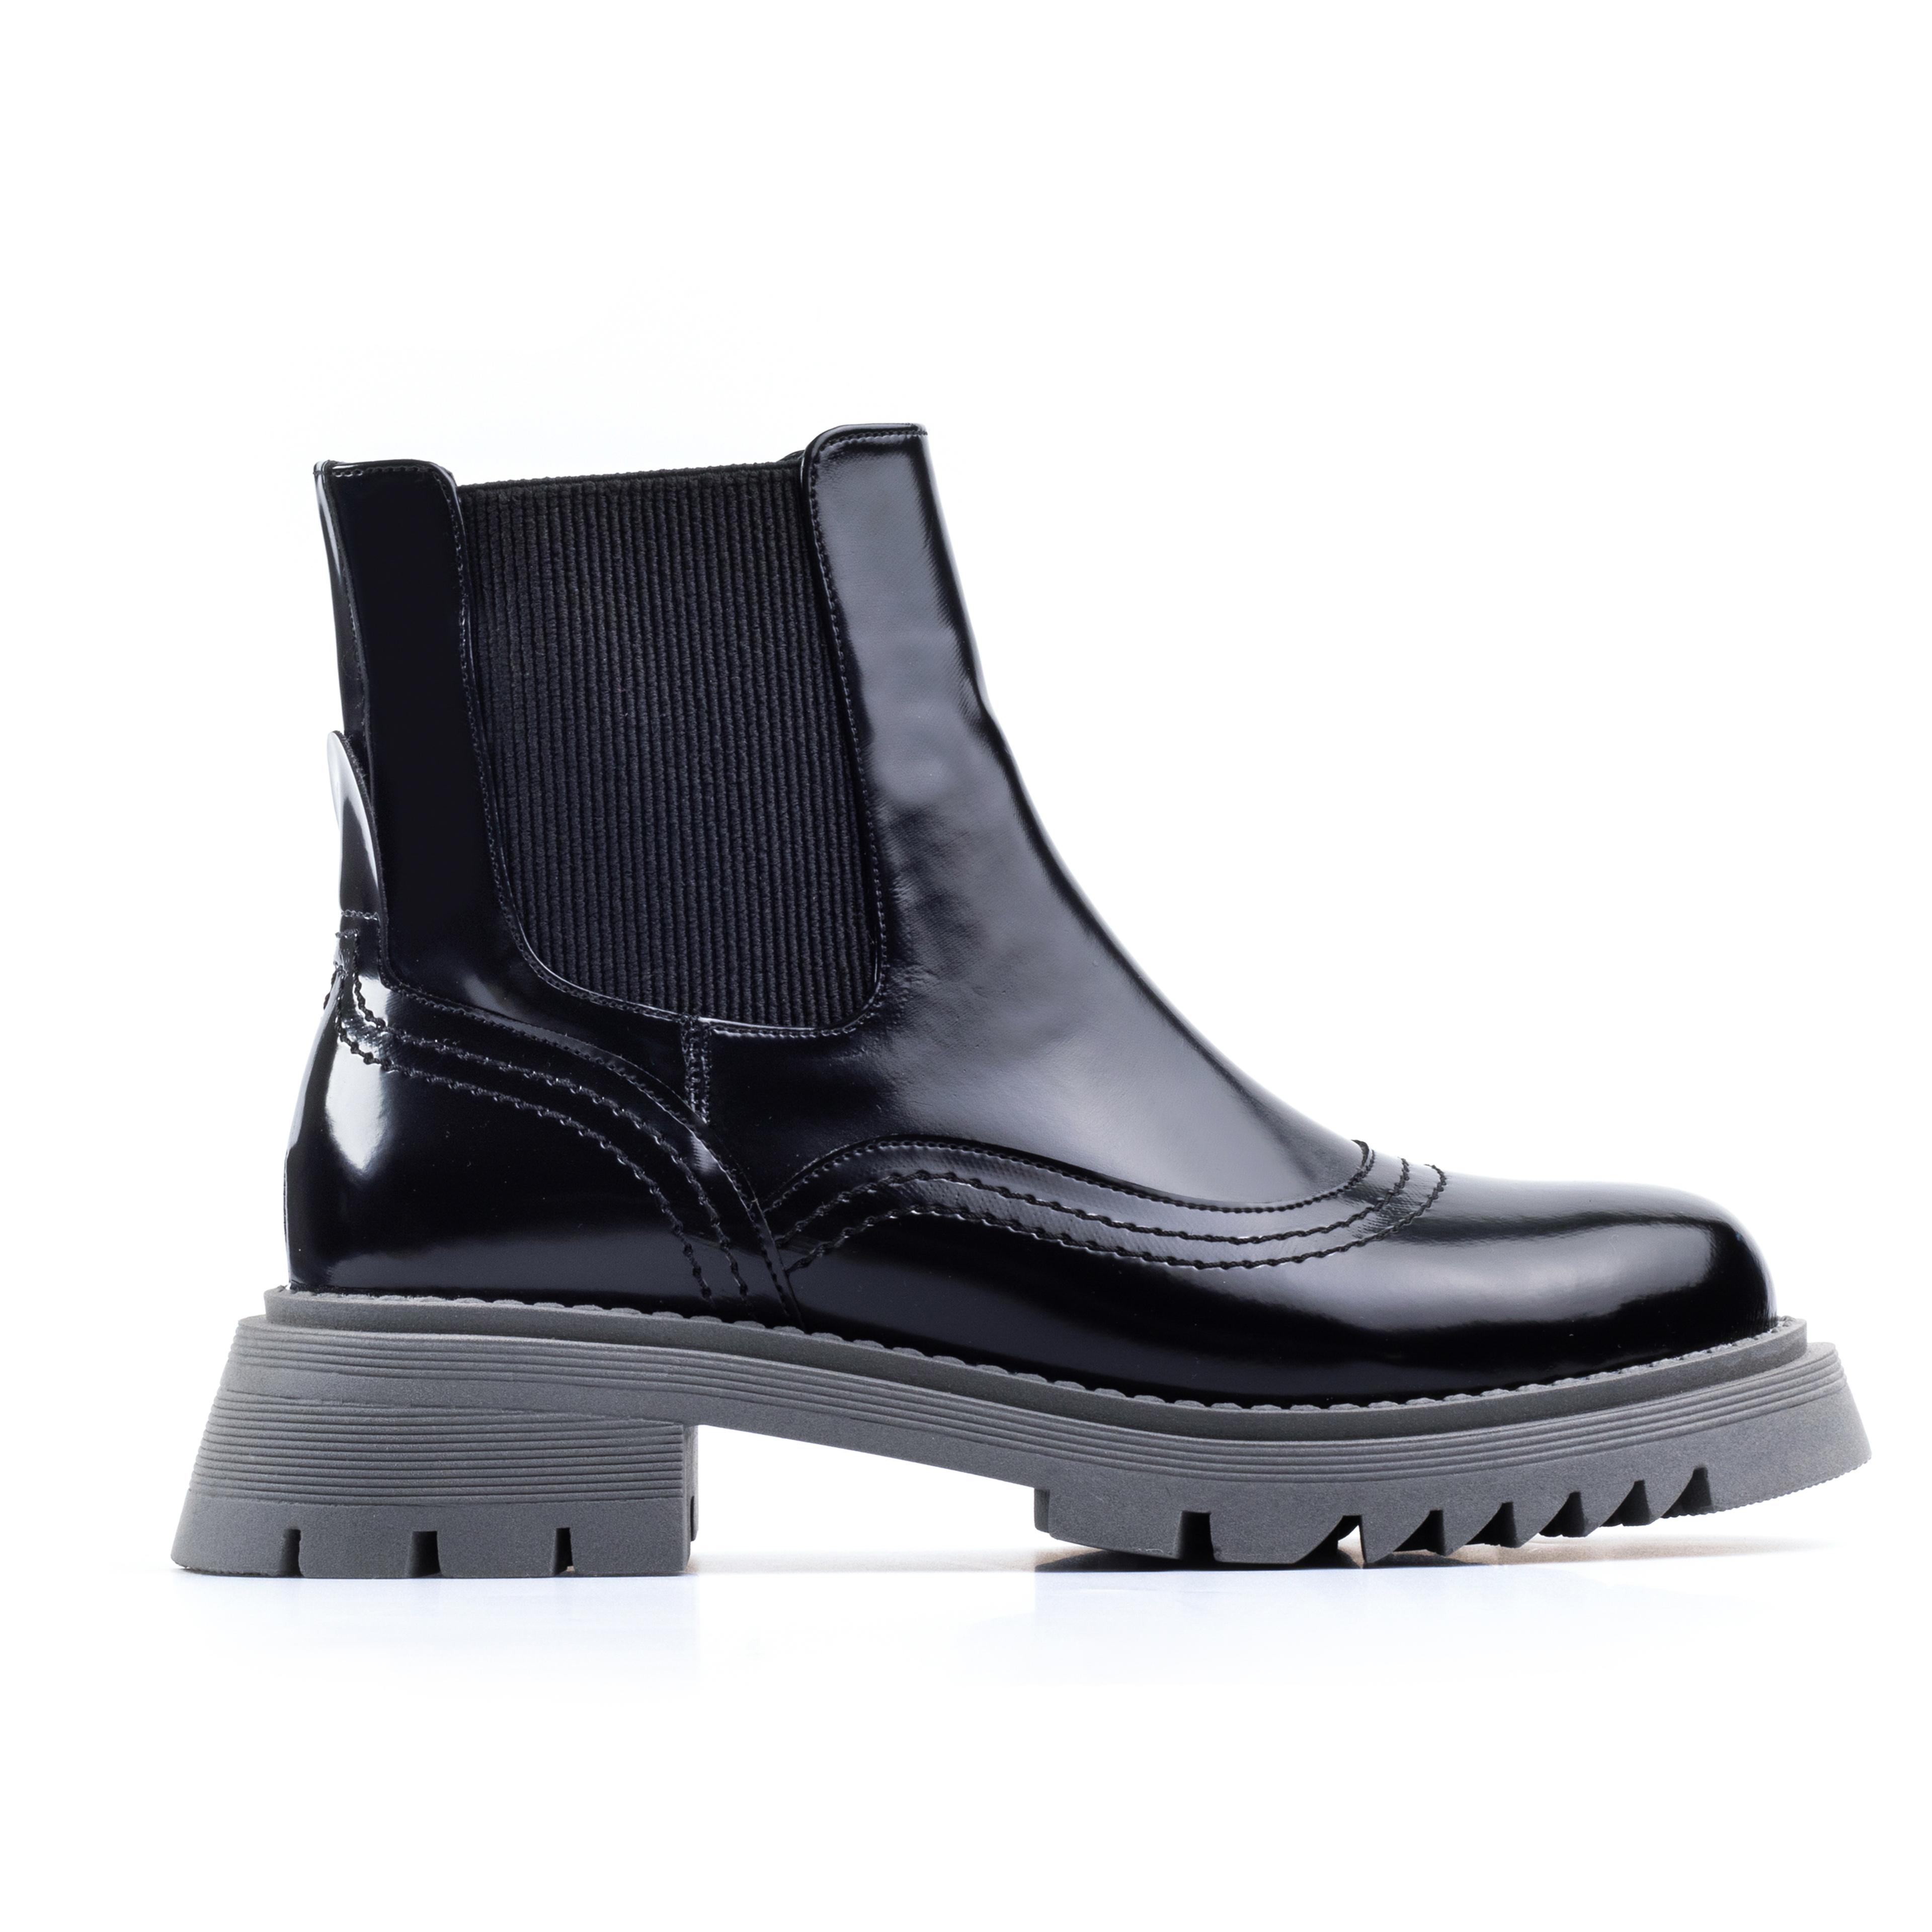 Black Matte Patent Leather Short Boots